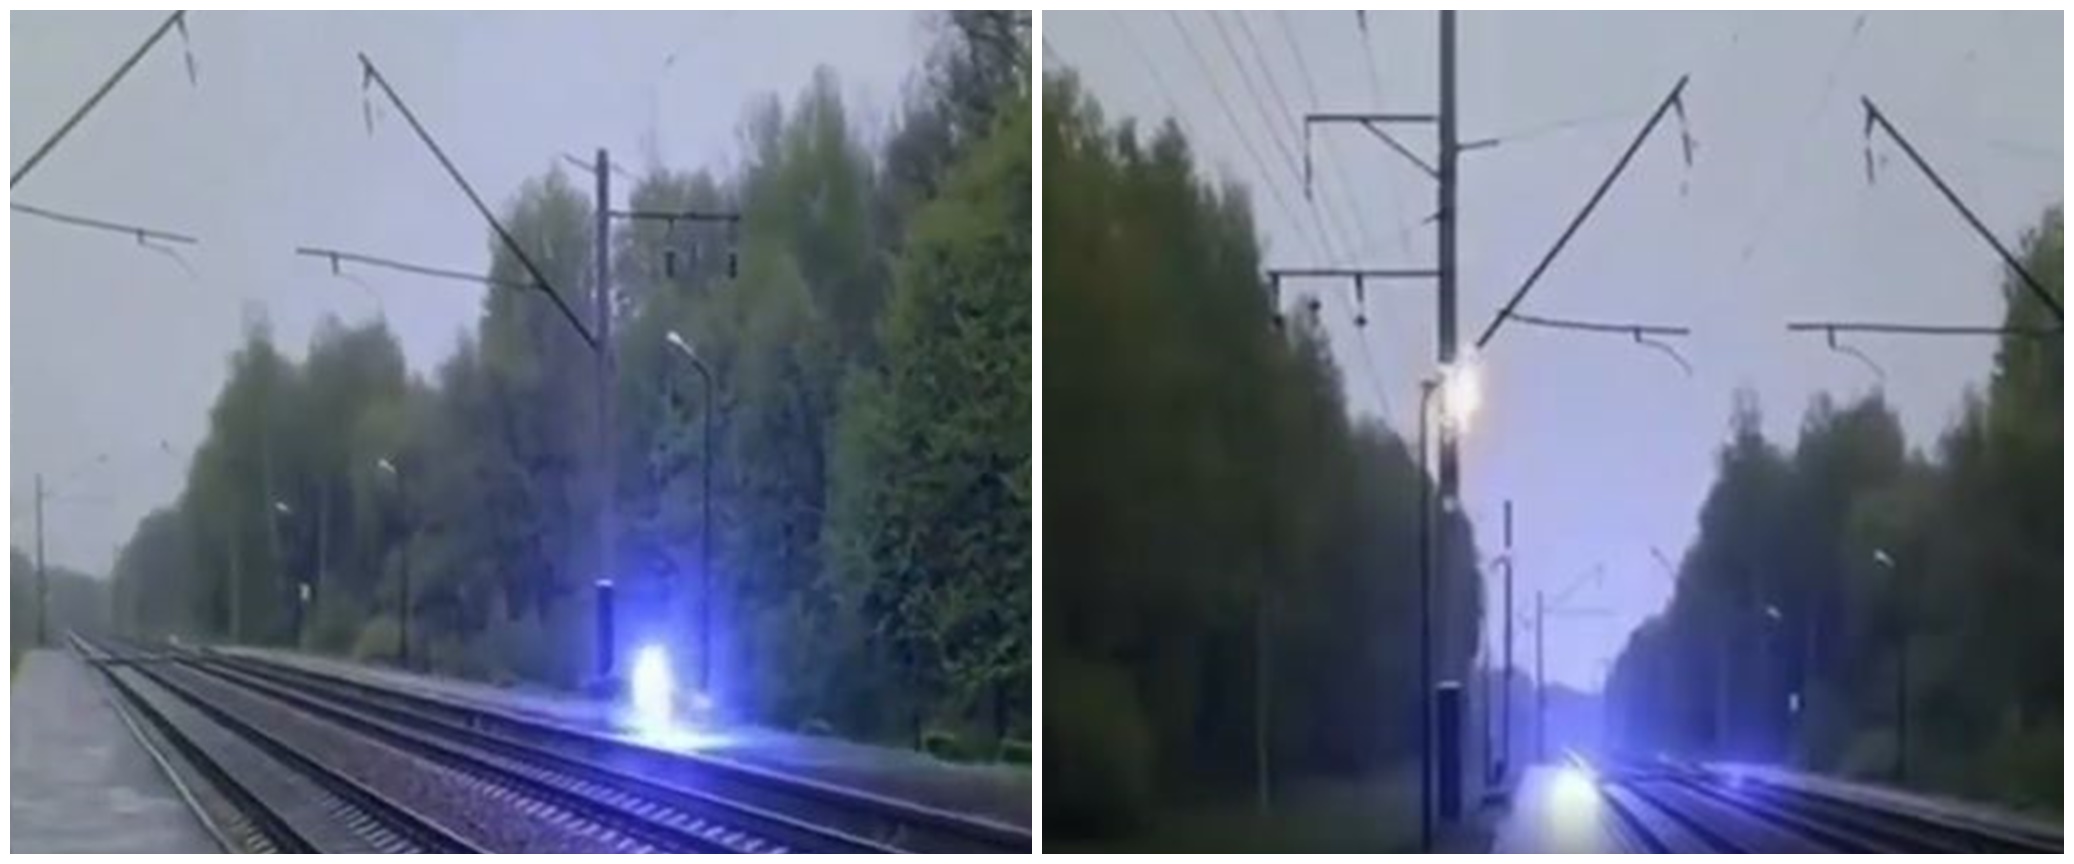 Viral cahaya biru melintas di rel kereta, diduga bola petir